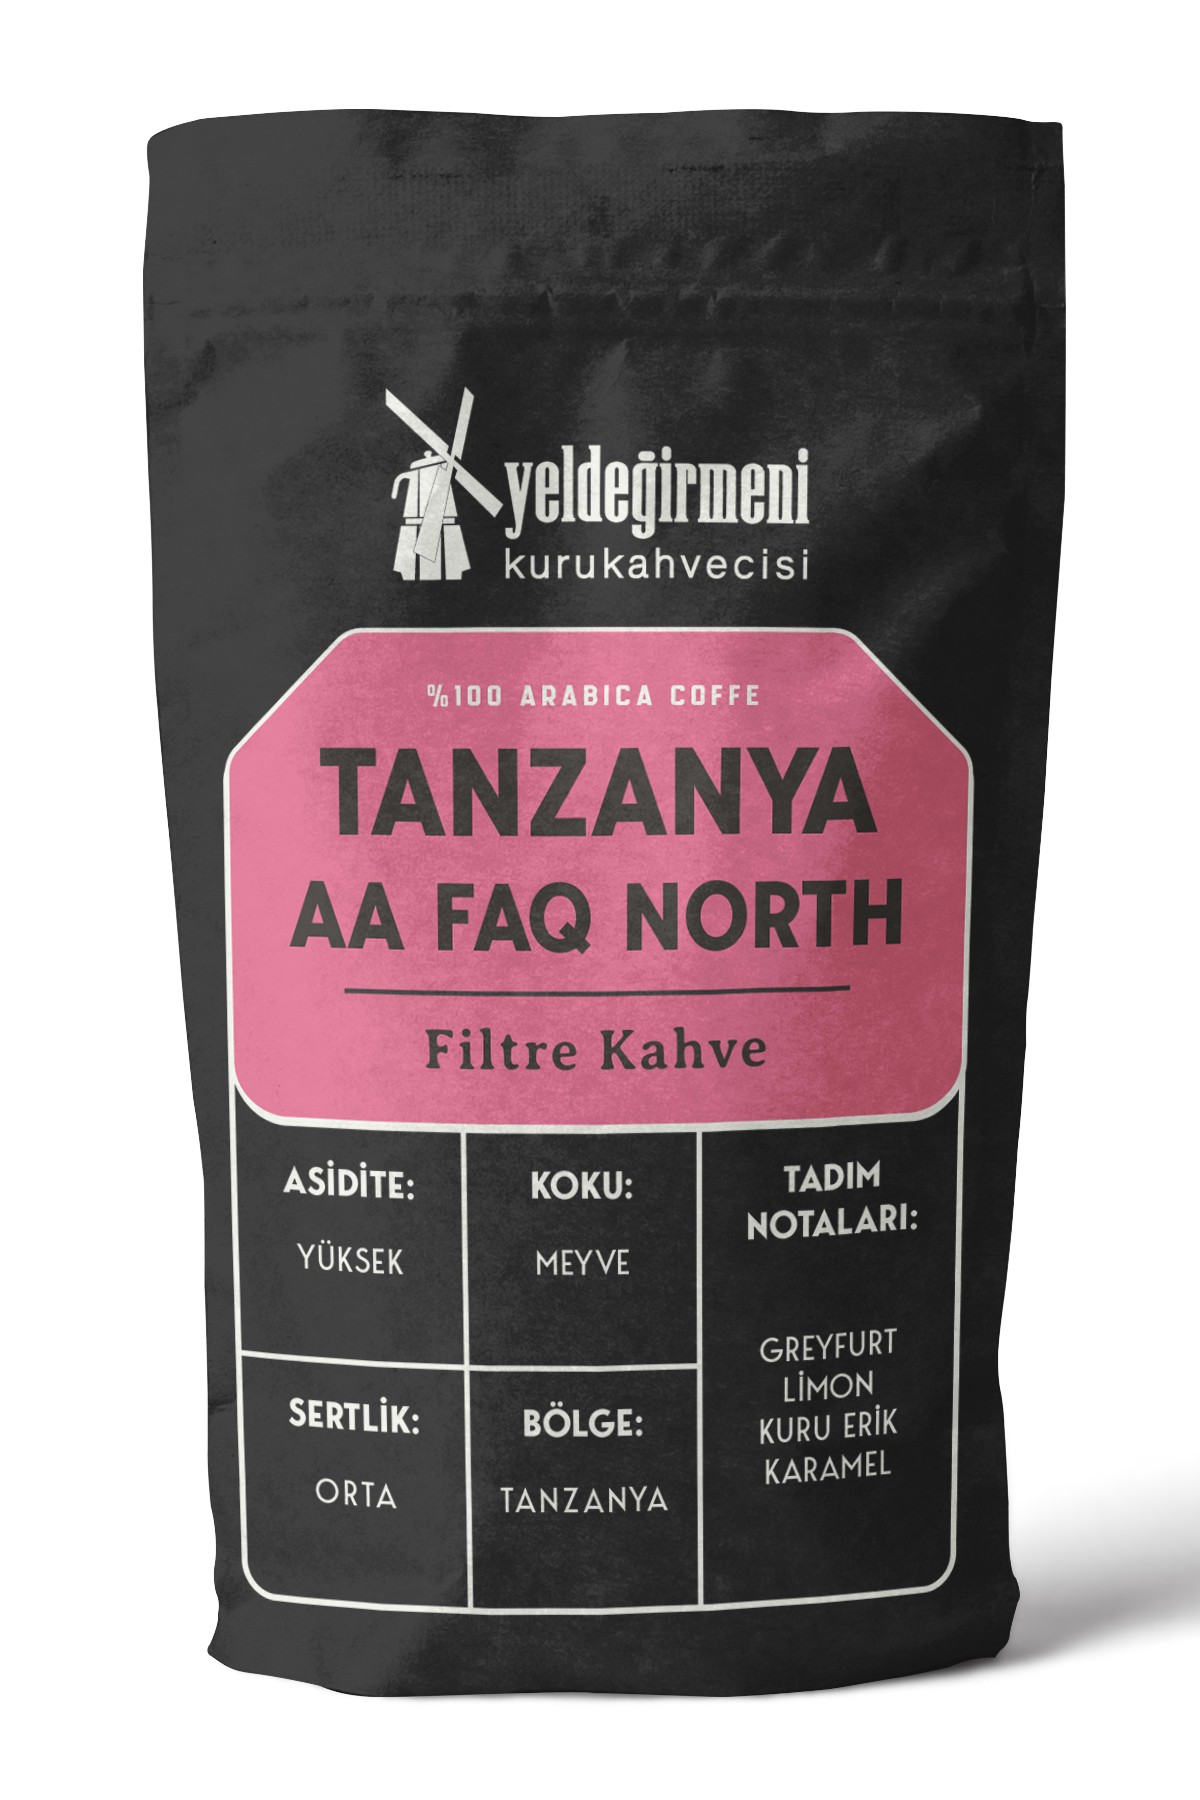 Tanzanya AA Faq North Filtre Kahve